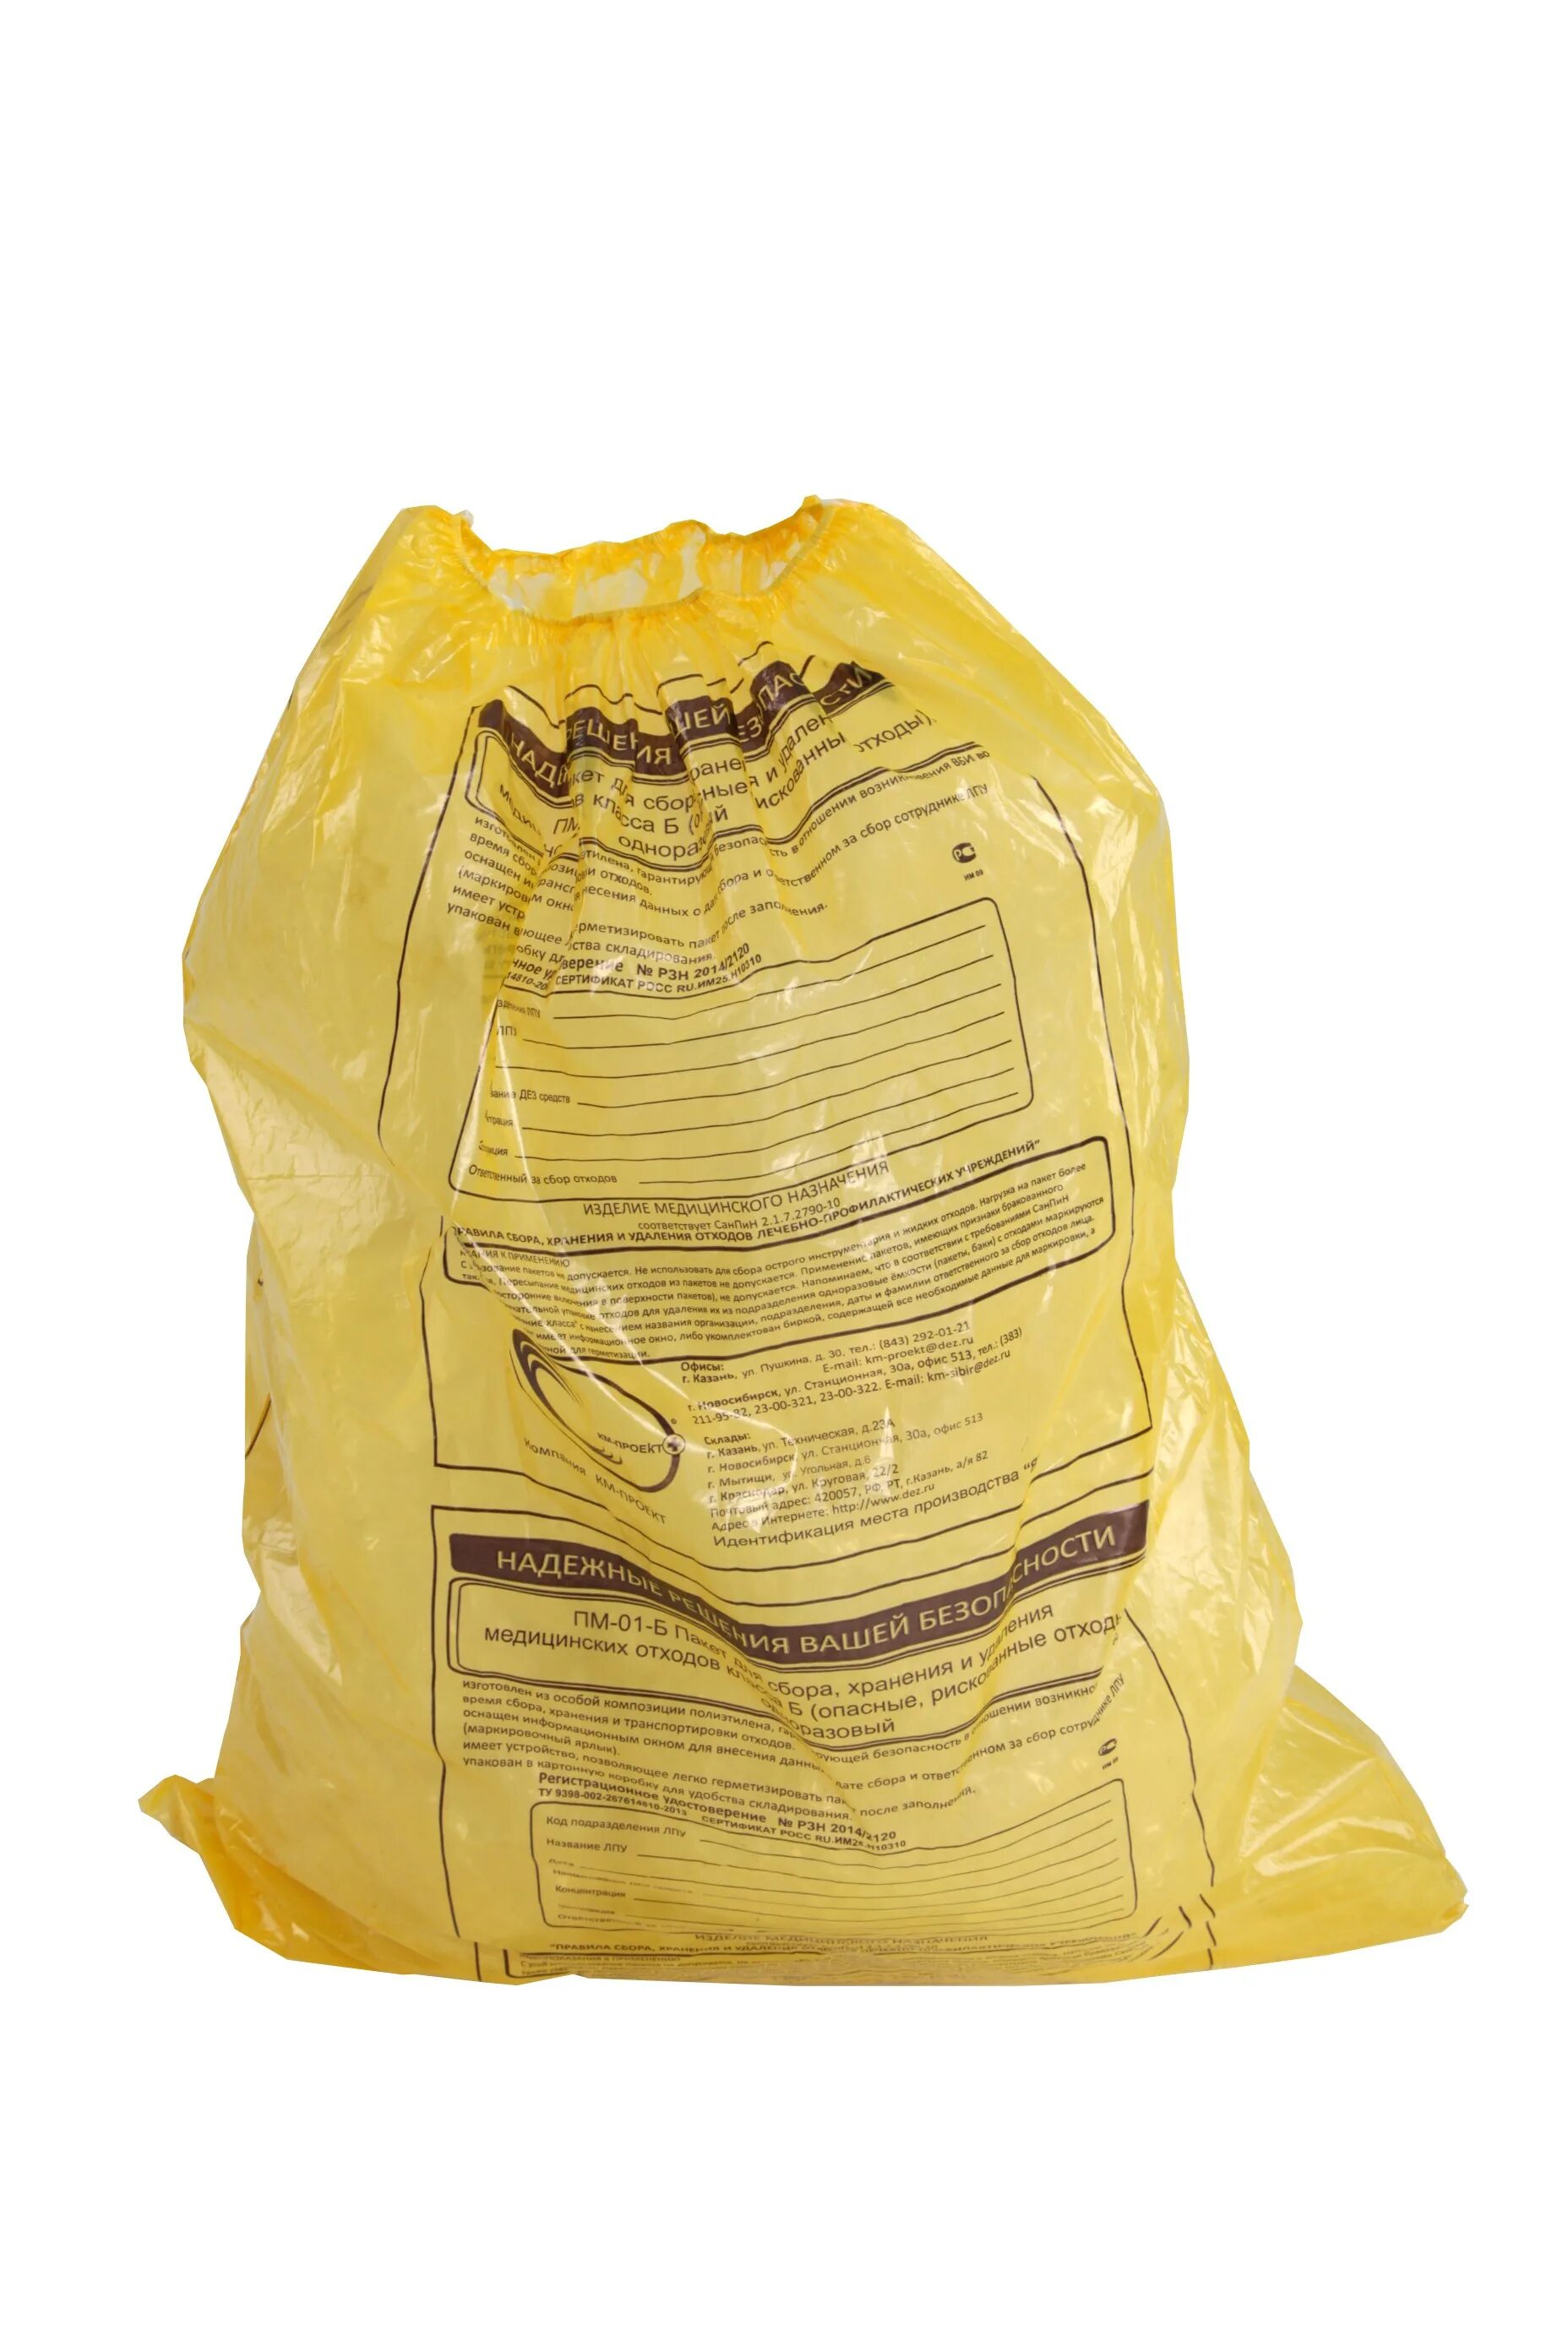 Пакеты для сбора отходов 500*600 б-желтые медком. Пакеты (мешки) для утилизации Инвамед. Мешки класса б для сбора медотходов. Мешки класса а для сбора медотходов.